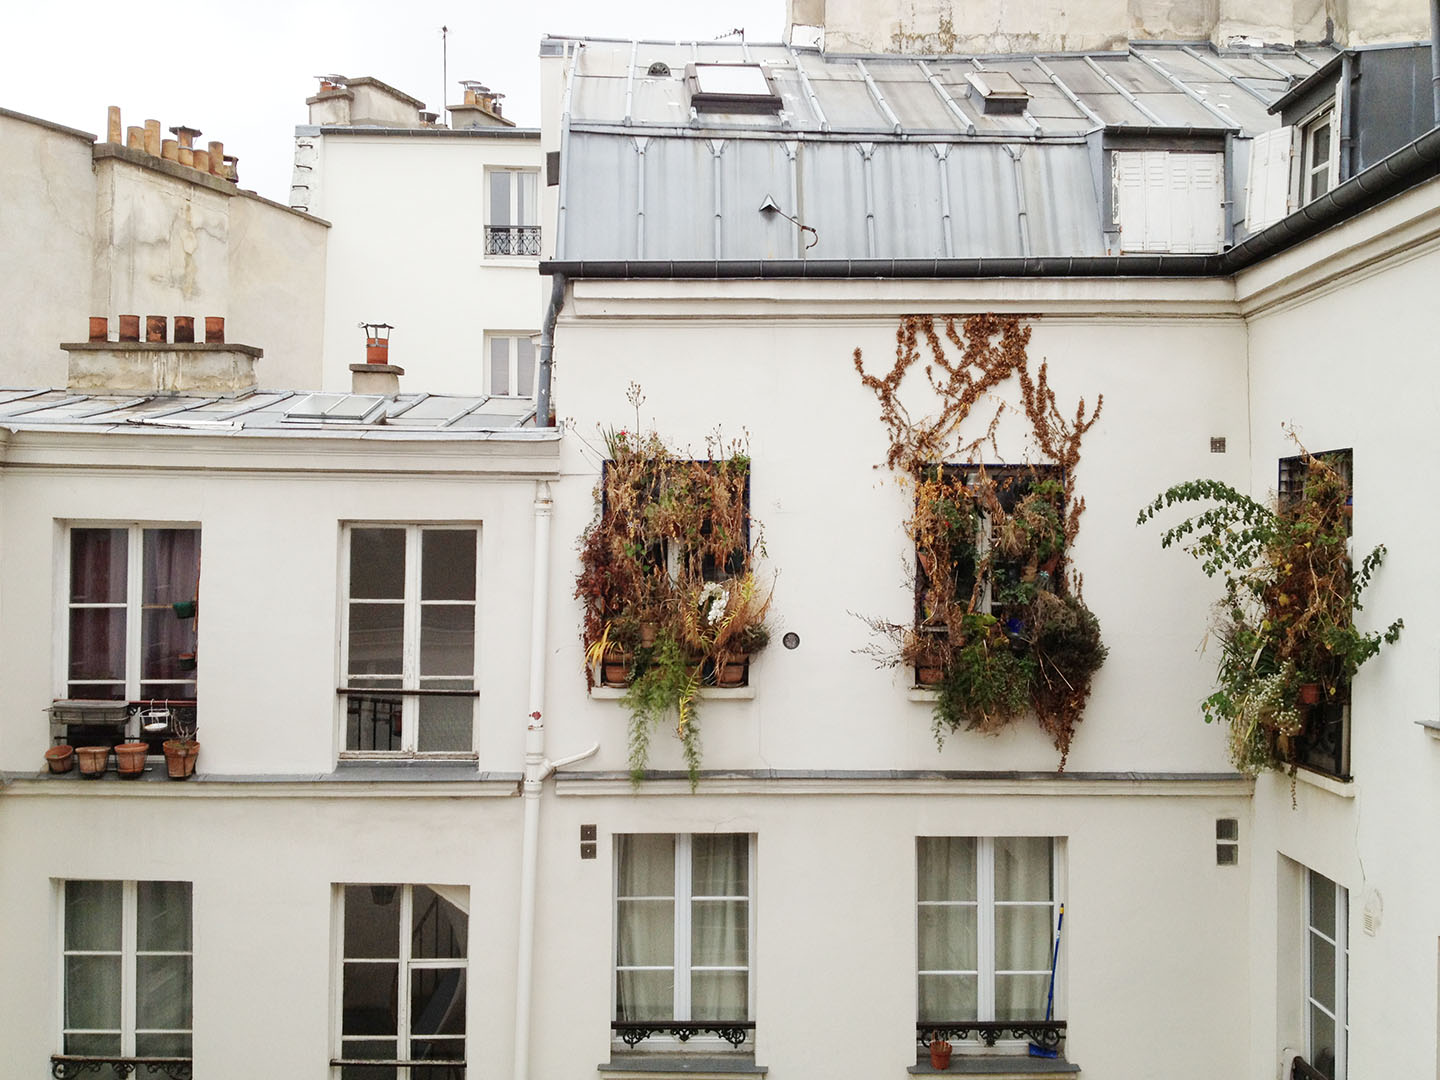   Wild Windows, Paris  